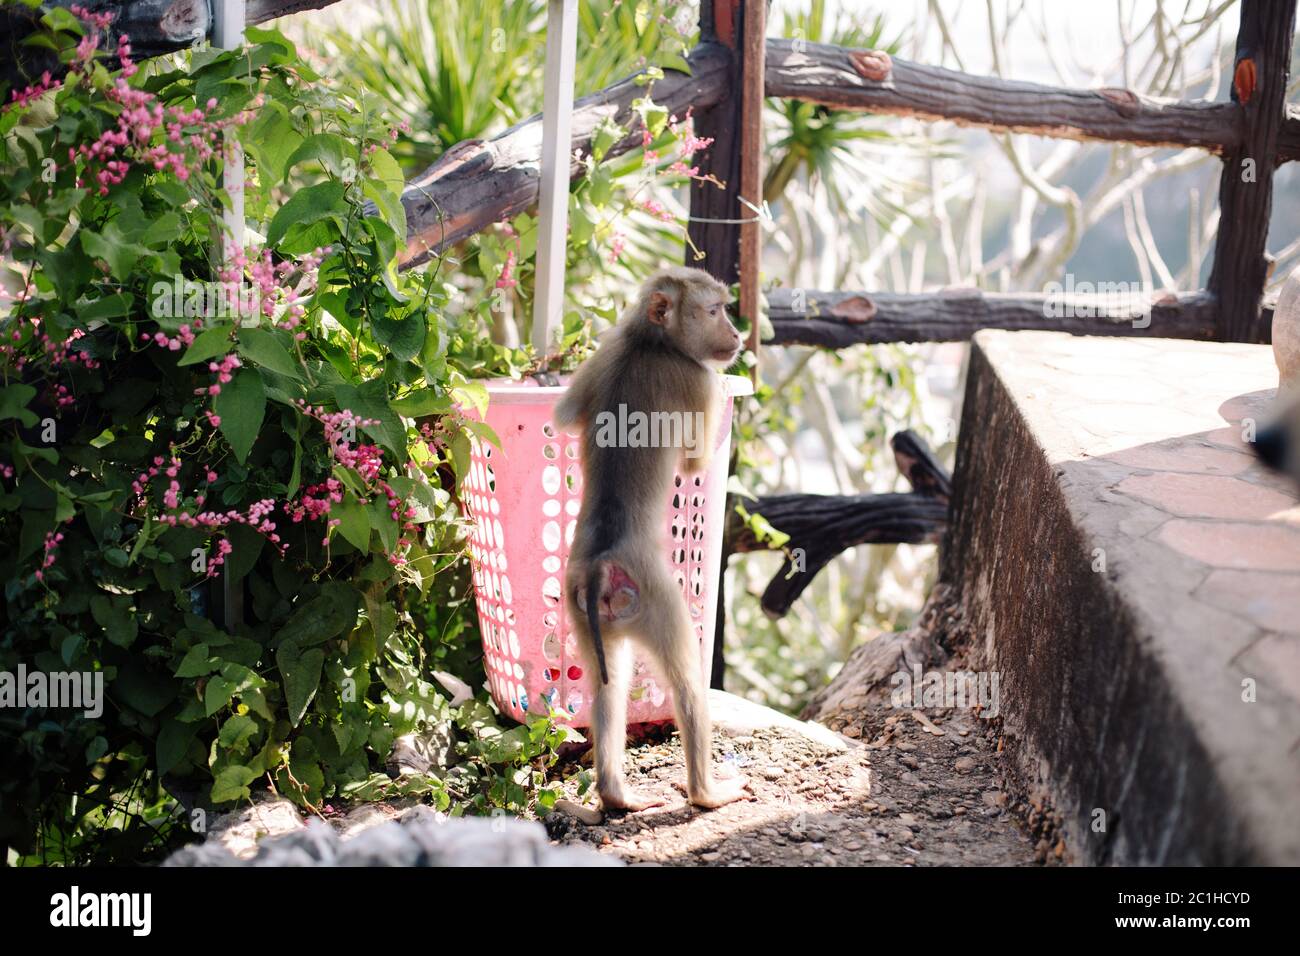 A young monkey looking in a rubbish/trash bin in Da Nang, Vietnam Stock Photo